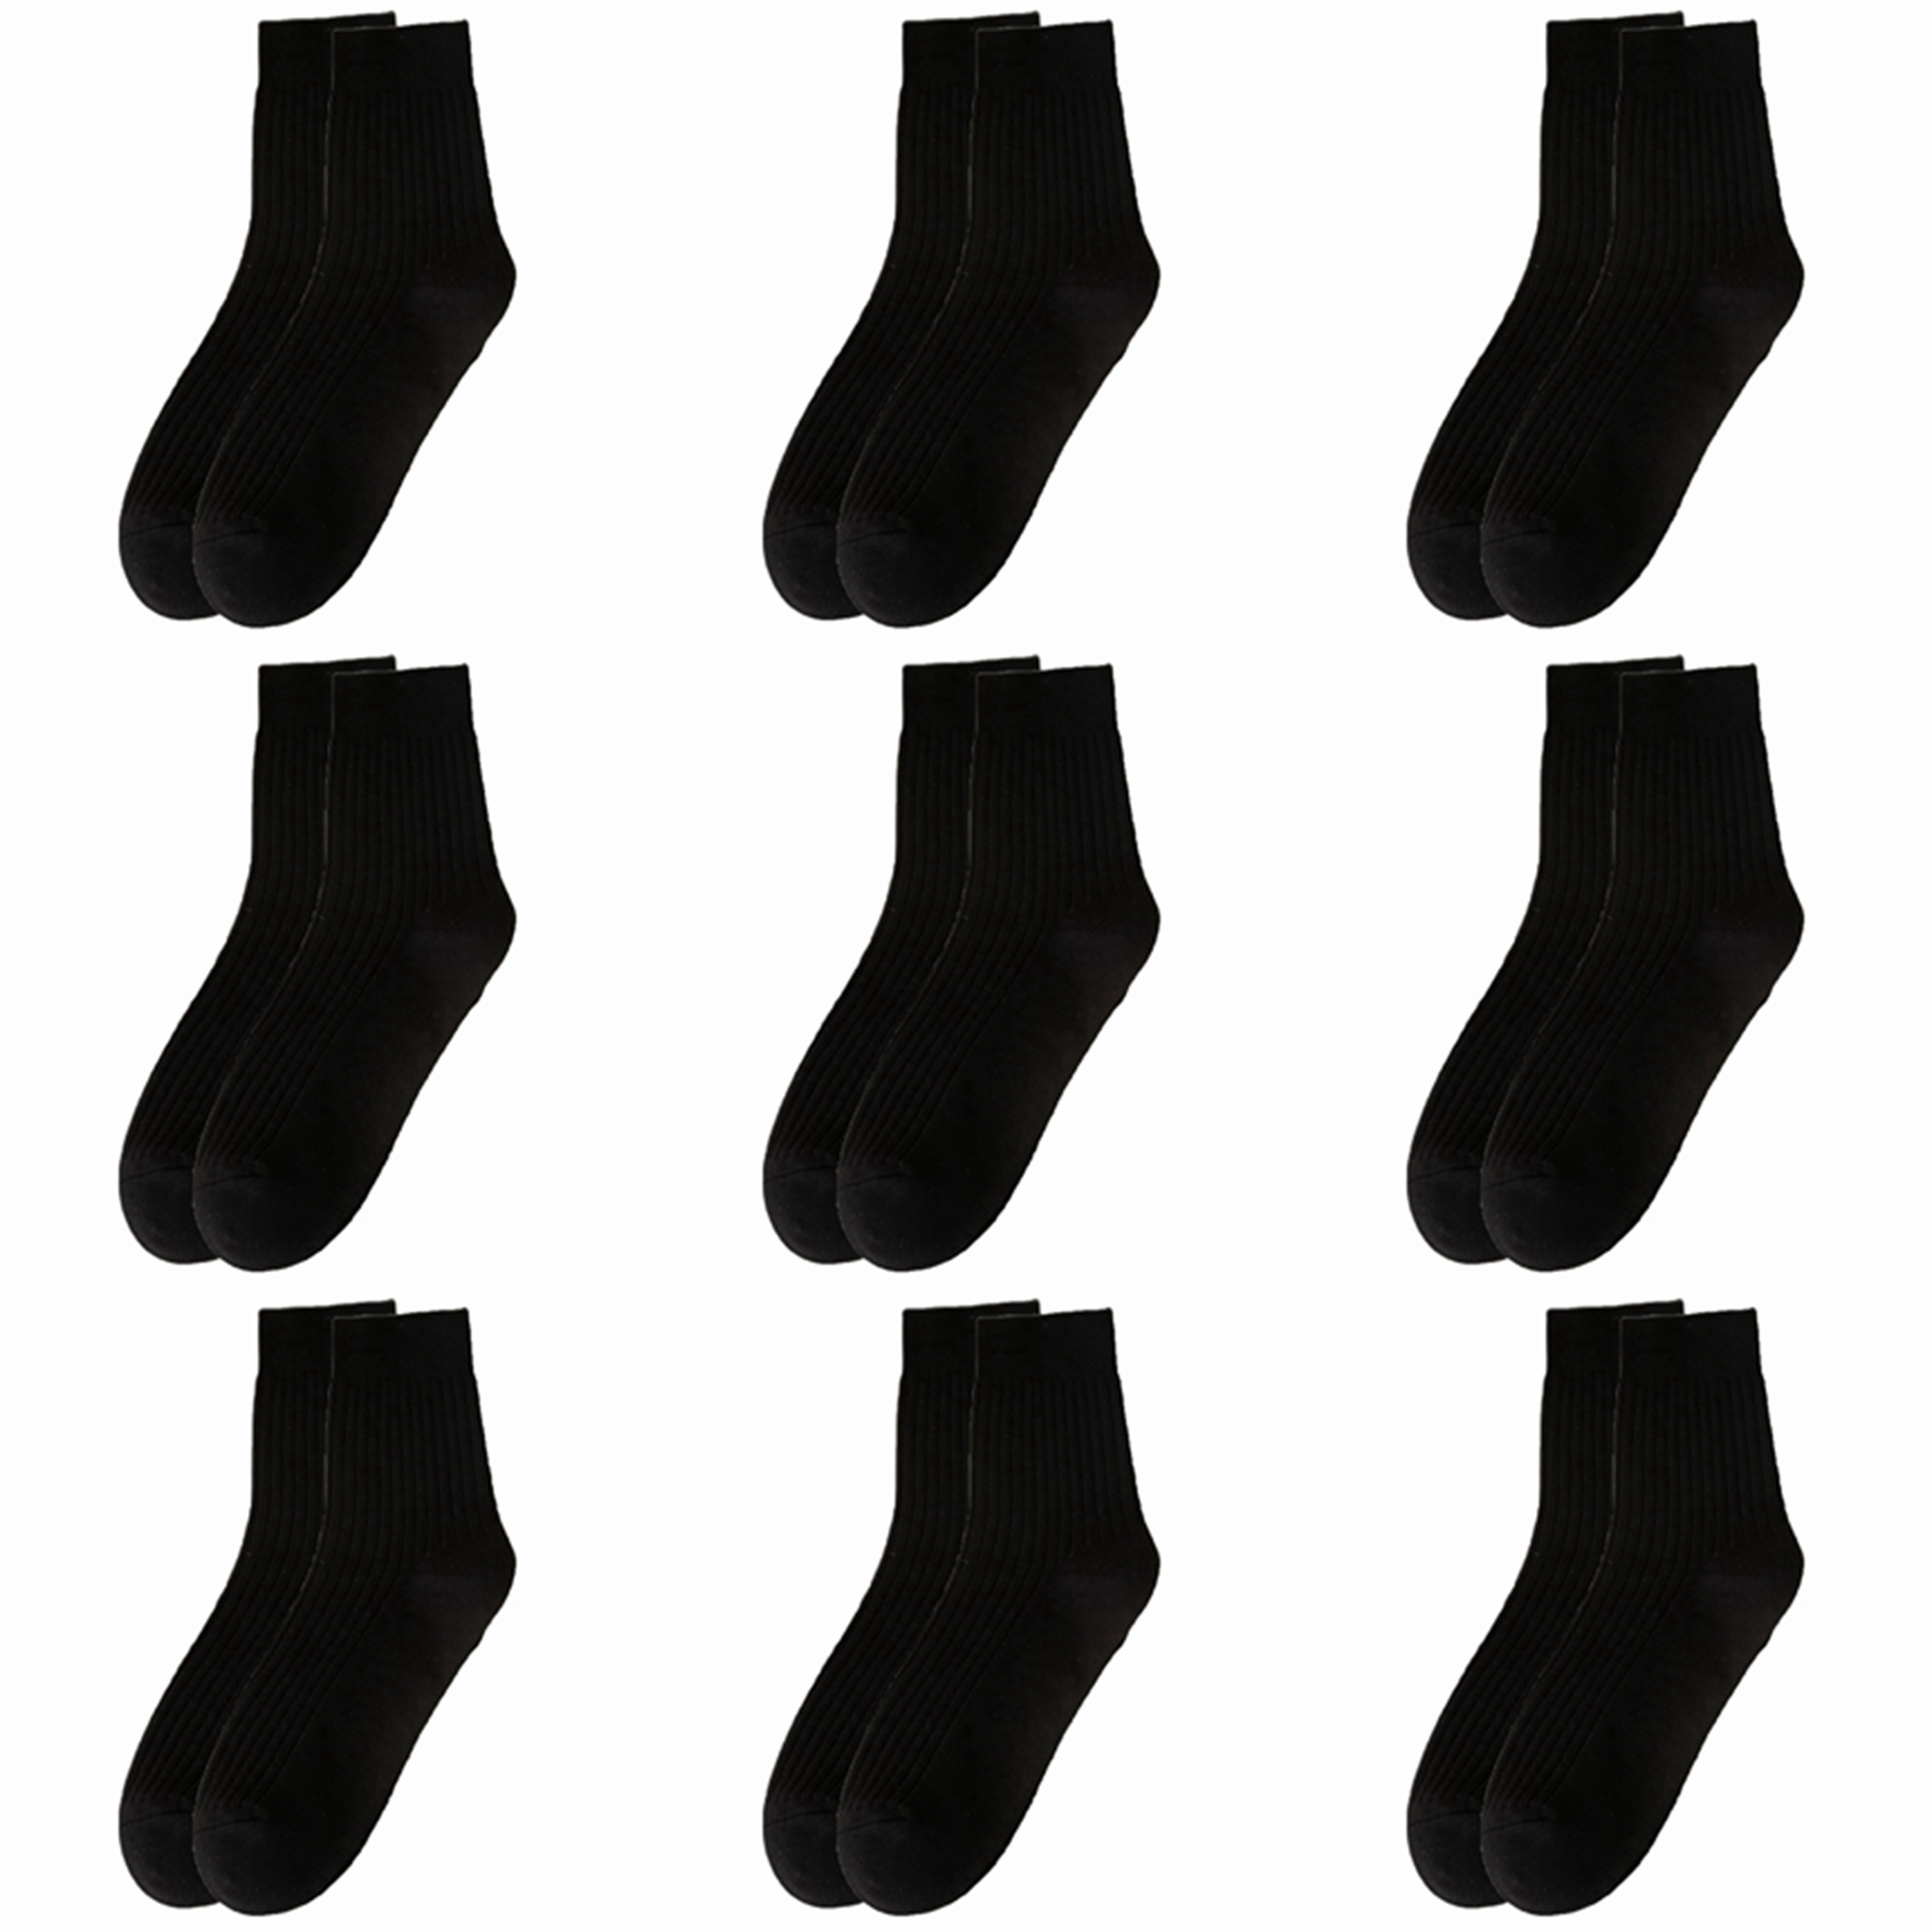 9 Pairs Cotton Socks for Men Durable Socks Resistant to Pilling Socks Medium Length